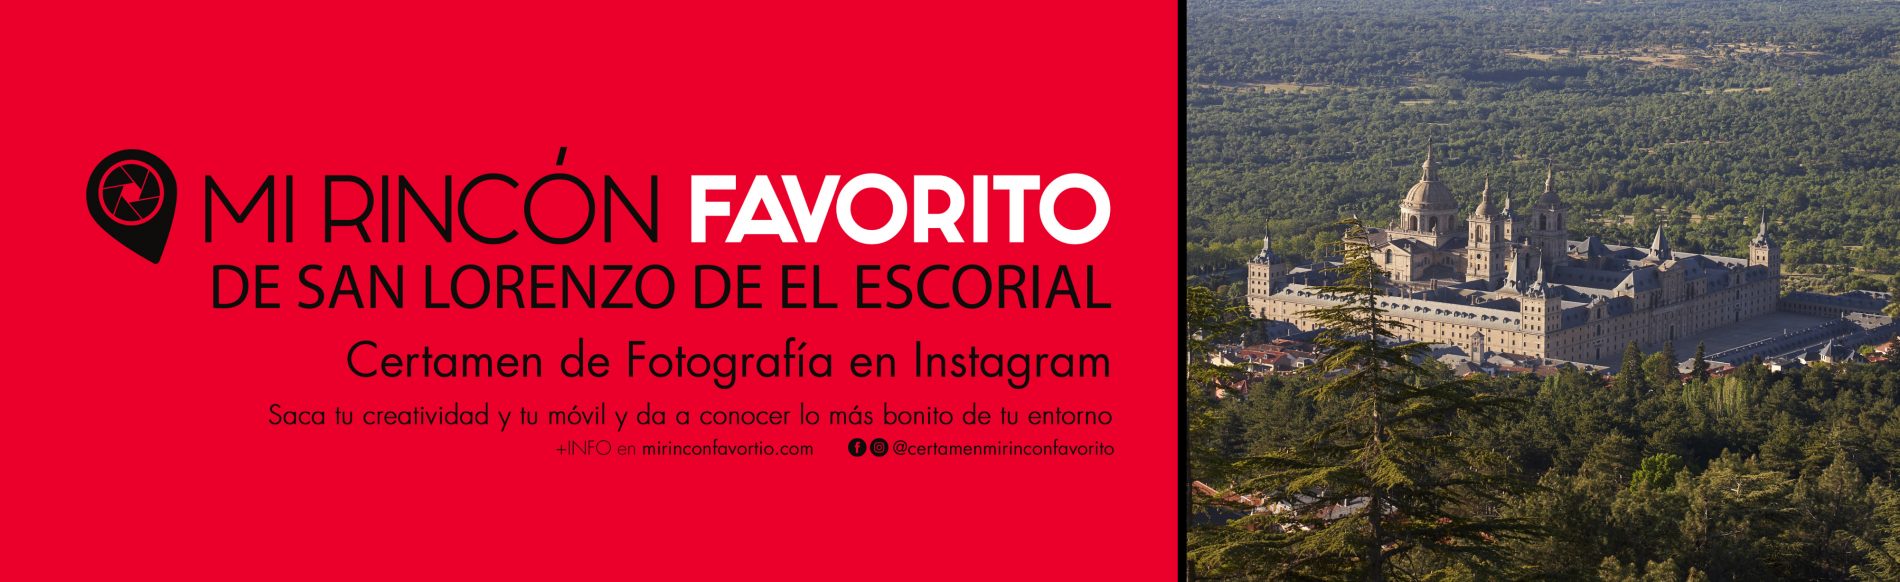 Mi Rincón Favorito de San Lorenzo de el Escorial Certamen de Fotografía en Instagram Saca tu creatividad y tu móvil y da a conocer lo mas bonito de tu entorno